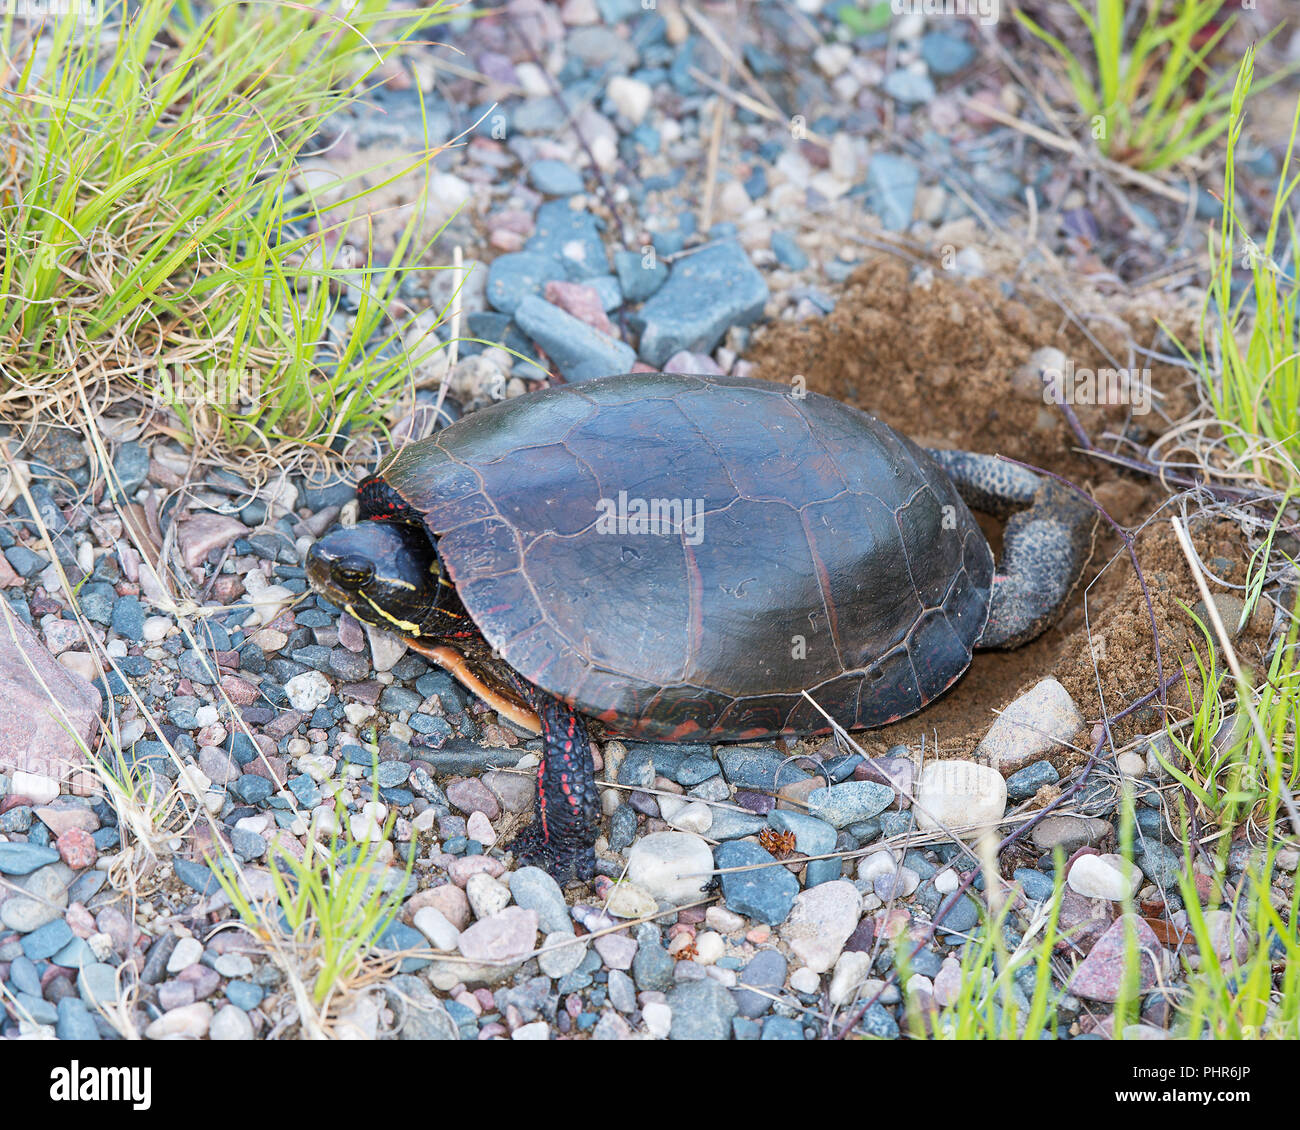 Gemalte Schildkröte eine Bohrung bildet die Schildkröteneier durch den Teich mit Kies Felsen in seiner Umwelt zu legen und die umliegenden Aussetzen seiner Turtle Shell, Pfoten, Stockfoto